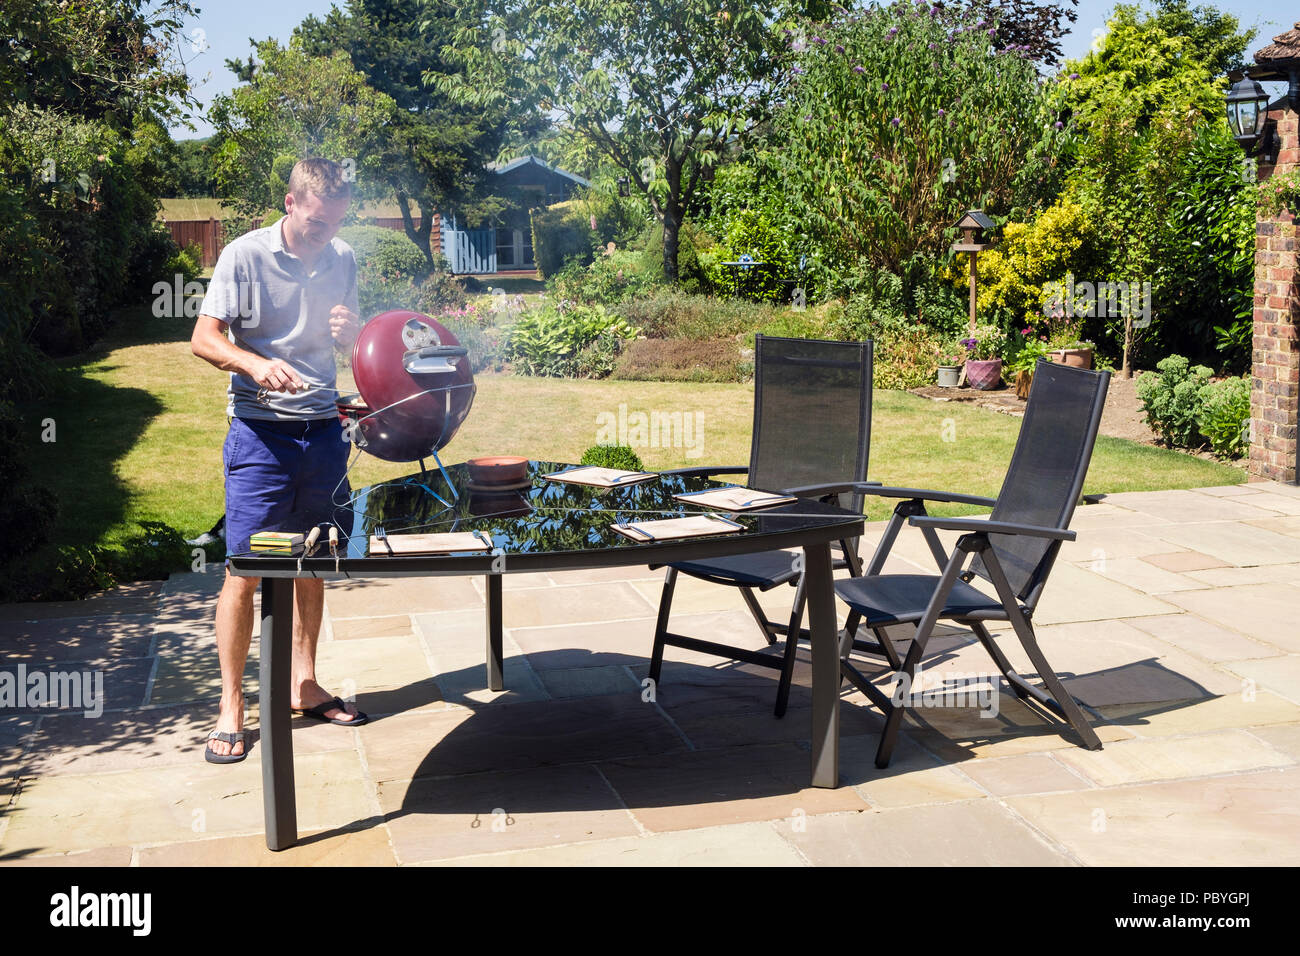 Image authentique d'un jeune homme du millénaire cuisiniers sur un barbecue sur une table de jardin domestique sur un patio en été chaud de 2018. Angleterre, Royaume-Uni, Grande-Bretagne Banque D'Images